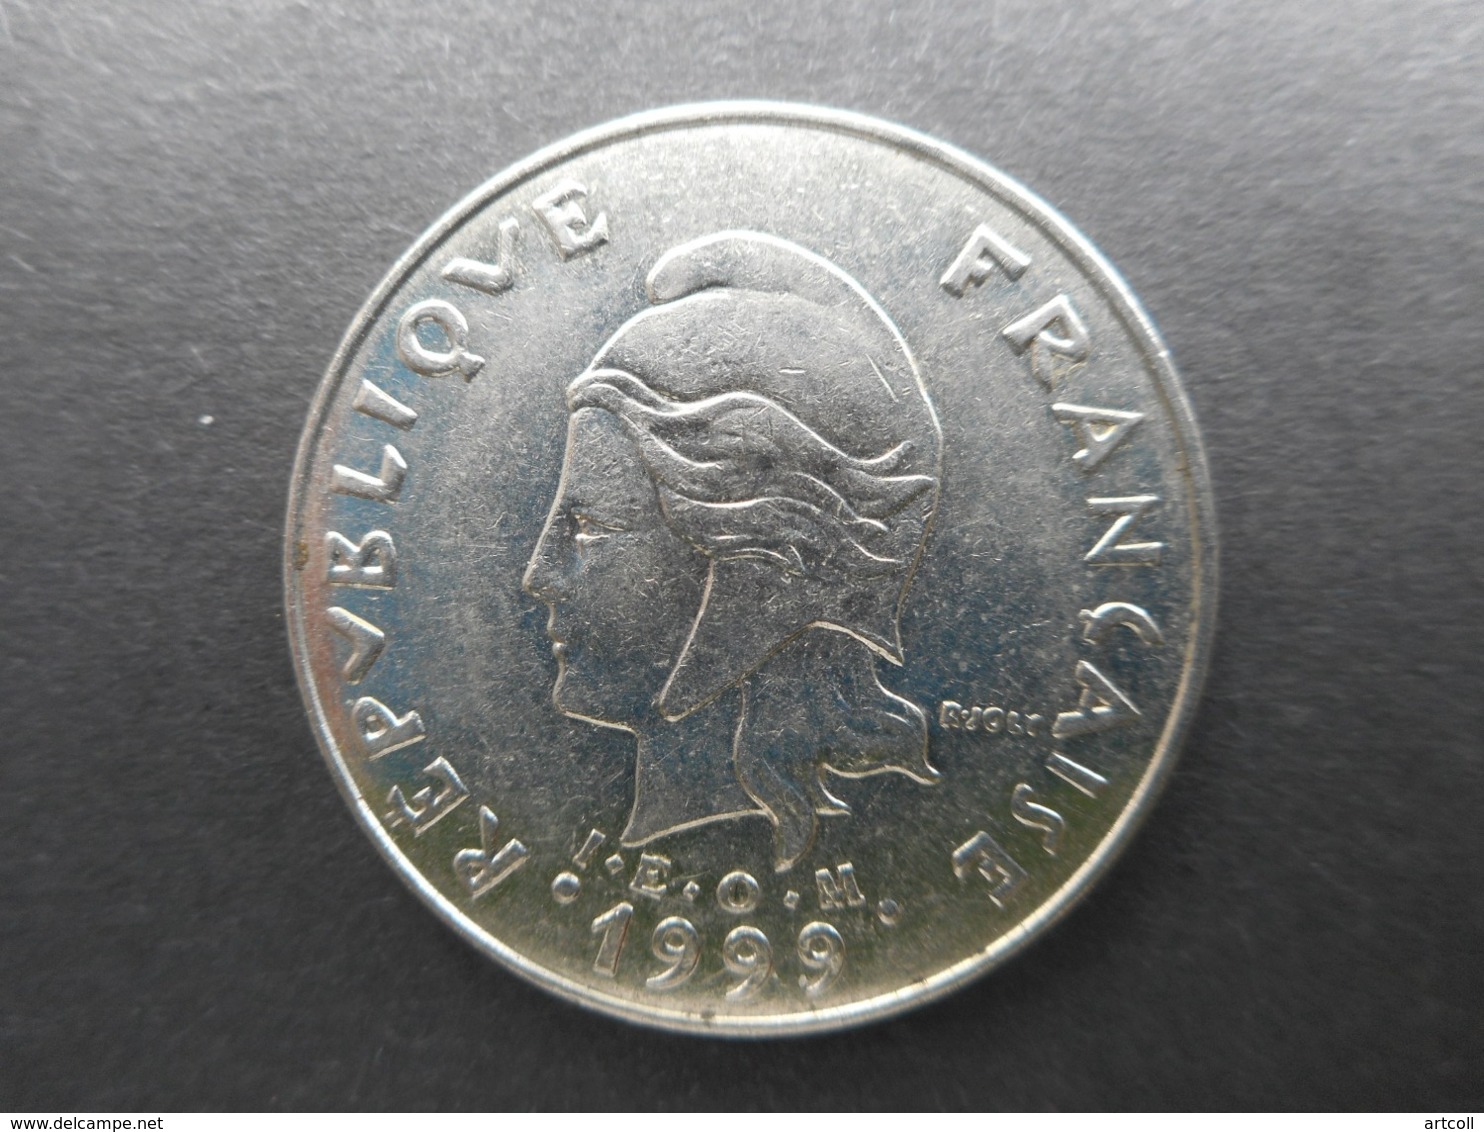 French Polynesia 20 Francs 1999 - French Polynesia